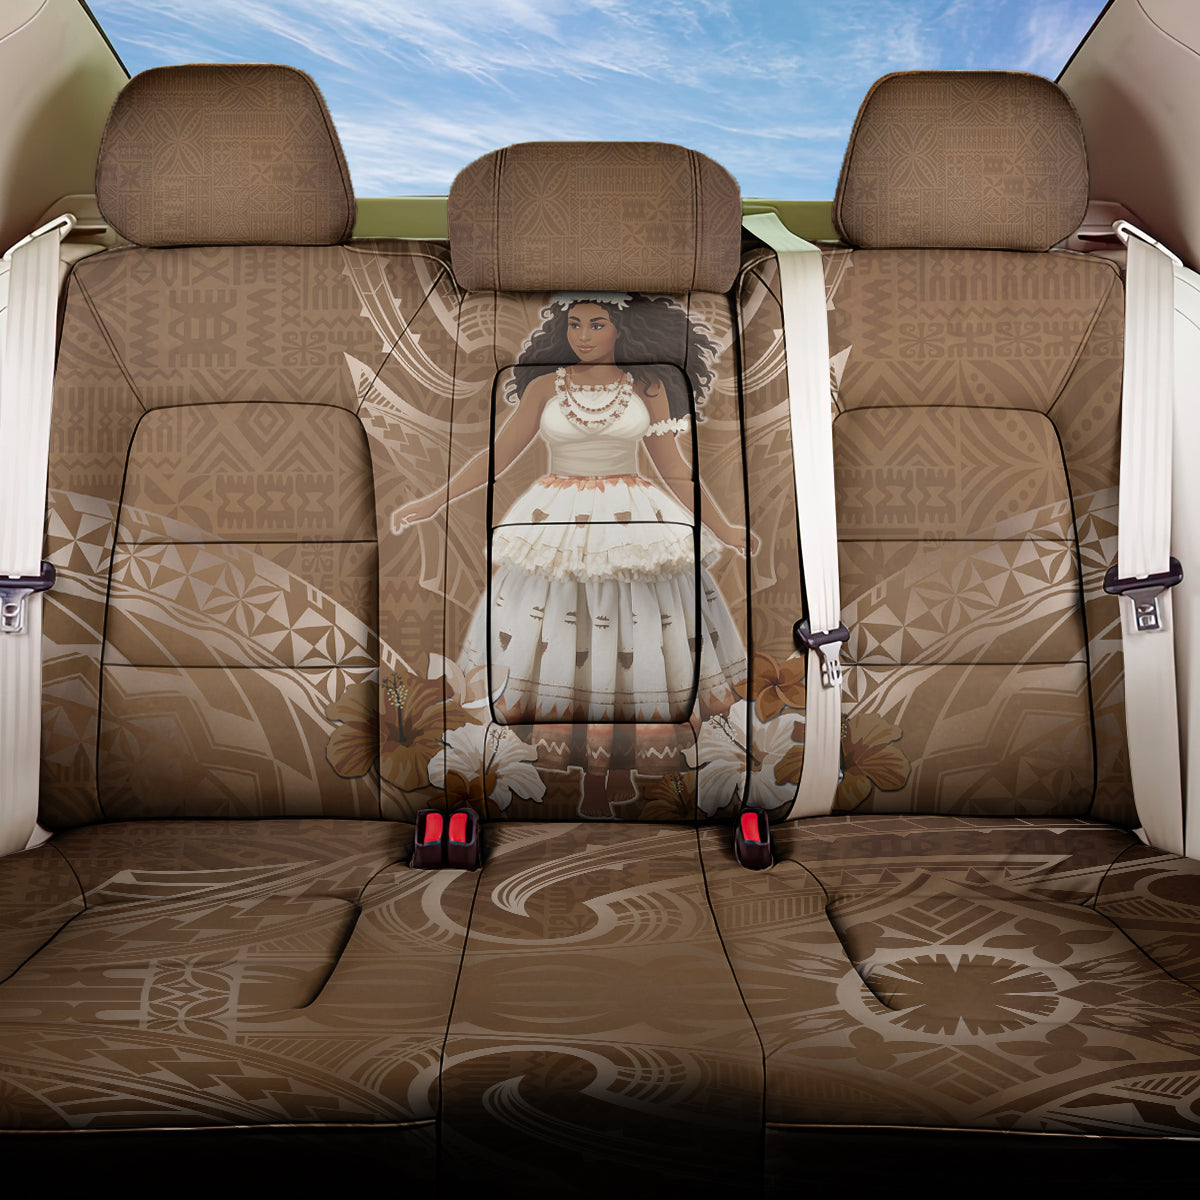 Bula Fiji Women's Day Back Car Seat Cover With Fijian Tapa Pattern